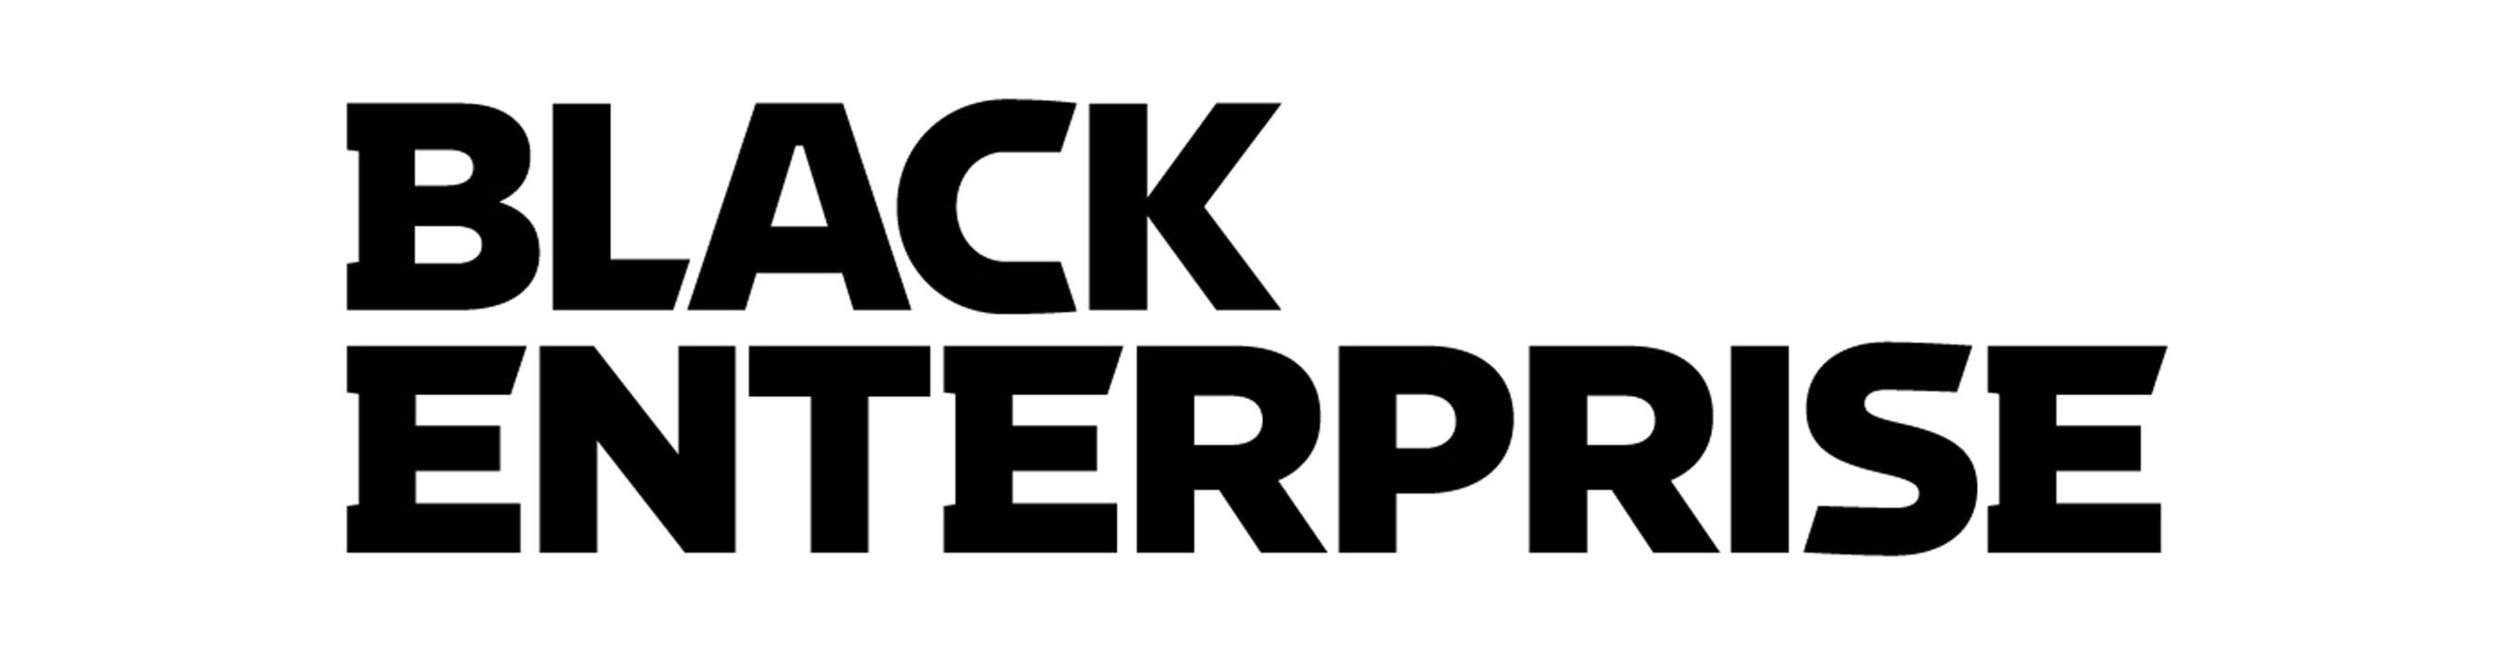 prn-black-enterprise-logo-1y-1-5-1high 2.jpg